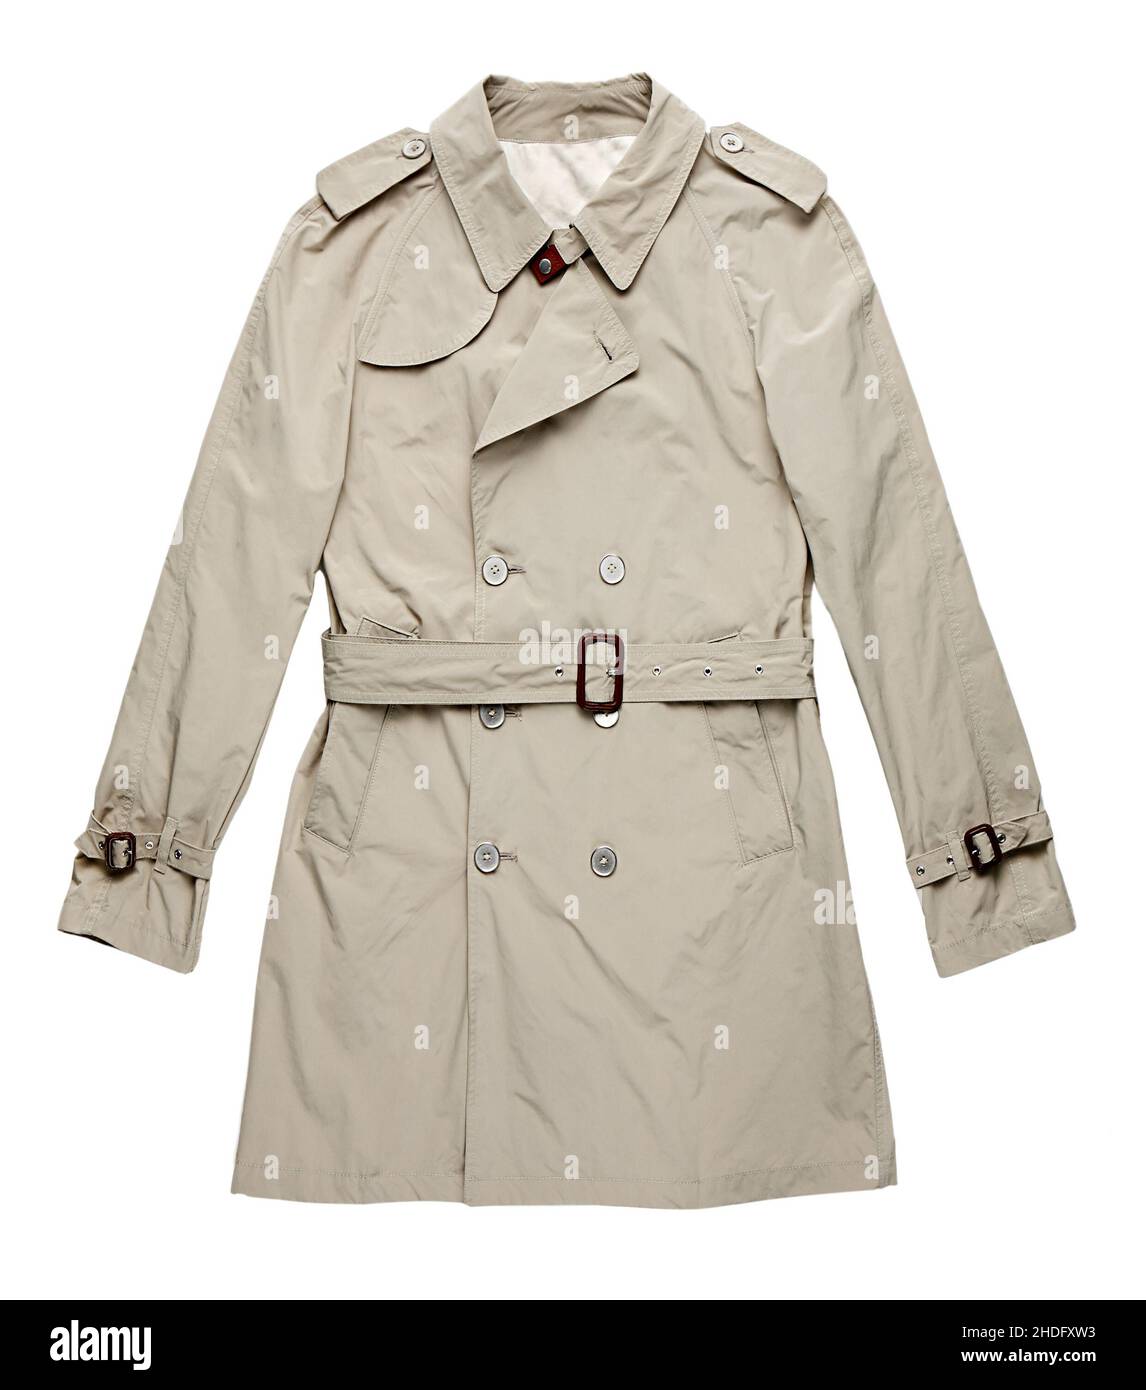 beige, overcoat, trench coat, beiges, coat, coats, overcoats, trench coats Stock Photo